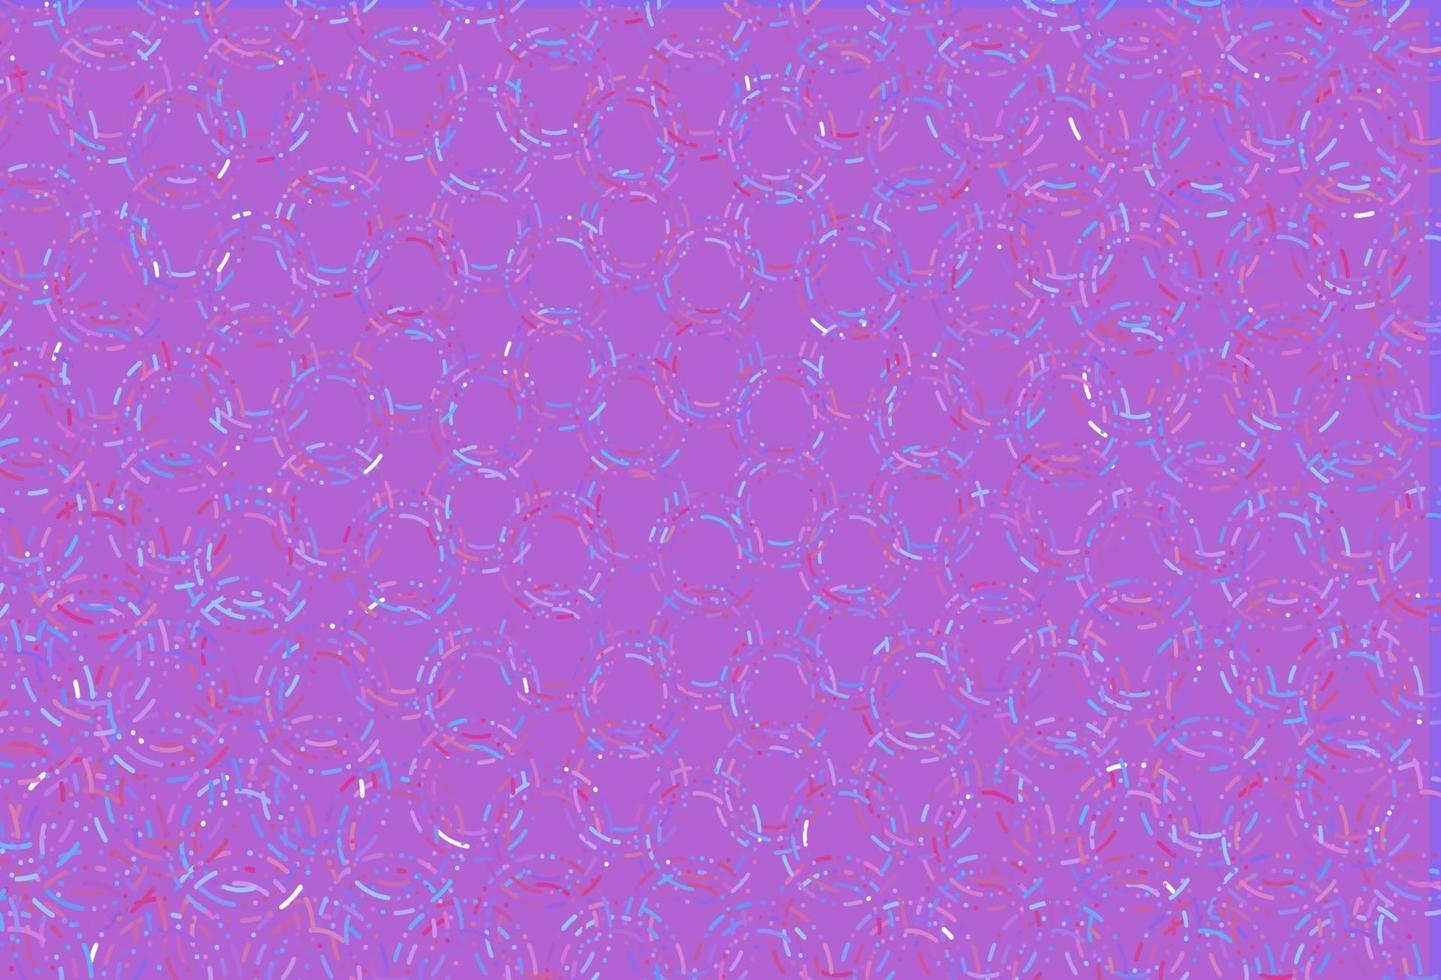 Fondo de vector rosa claro, azul con burbujas.